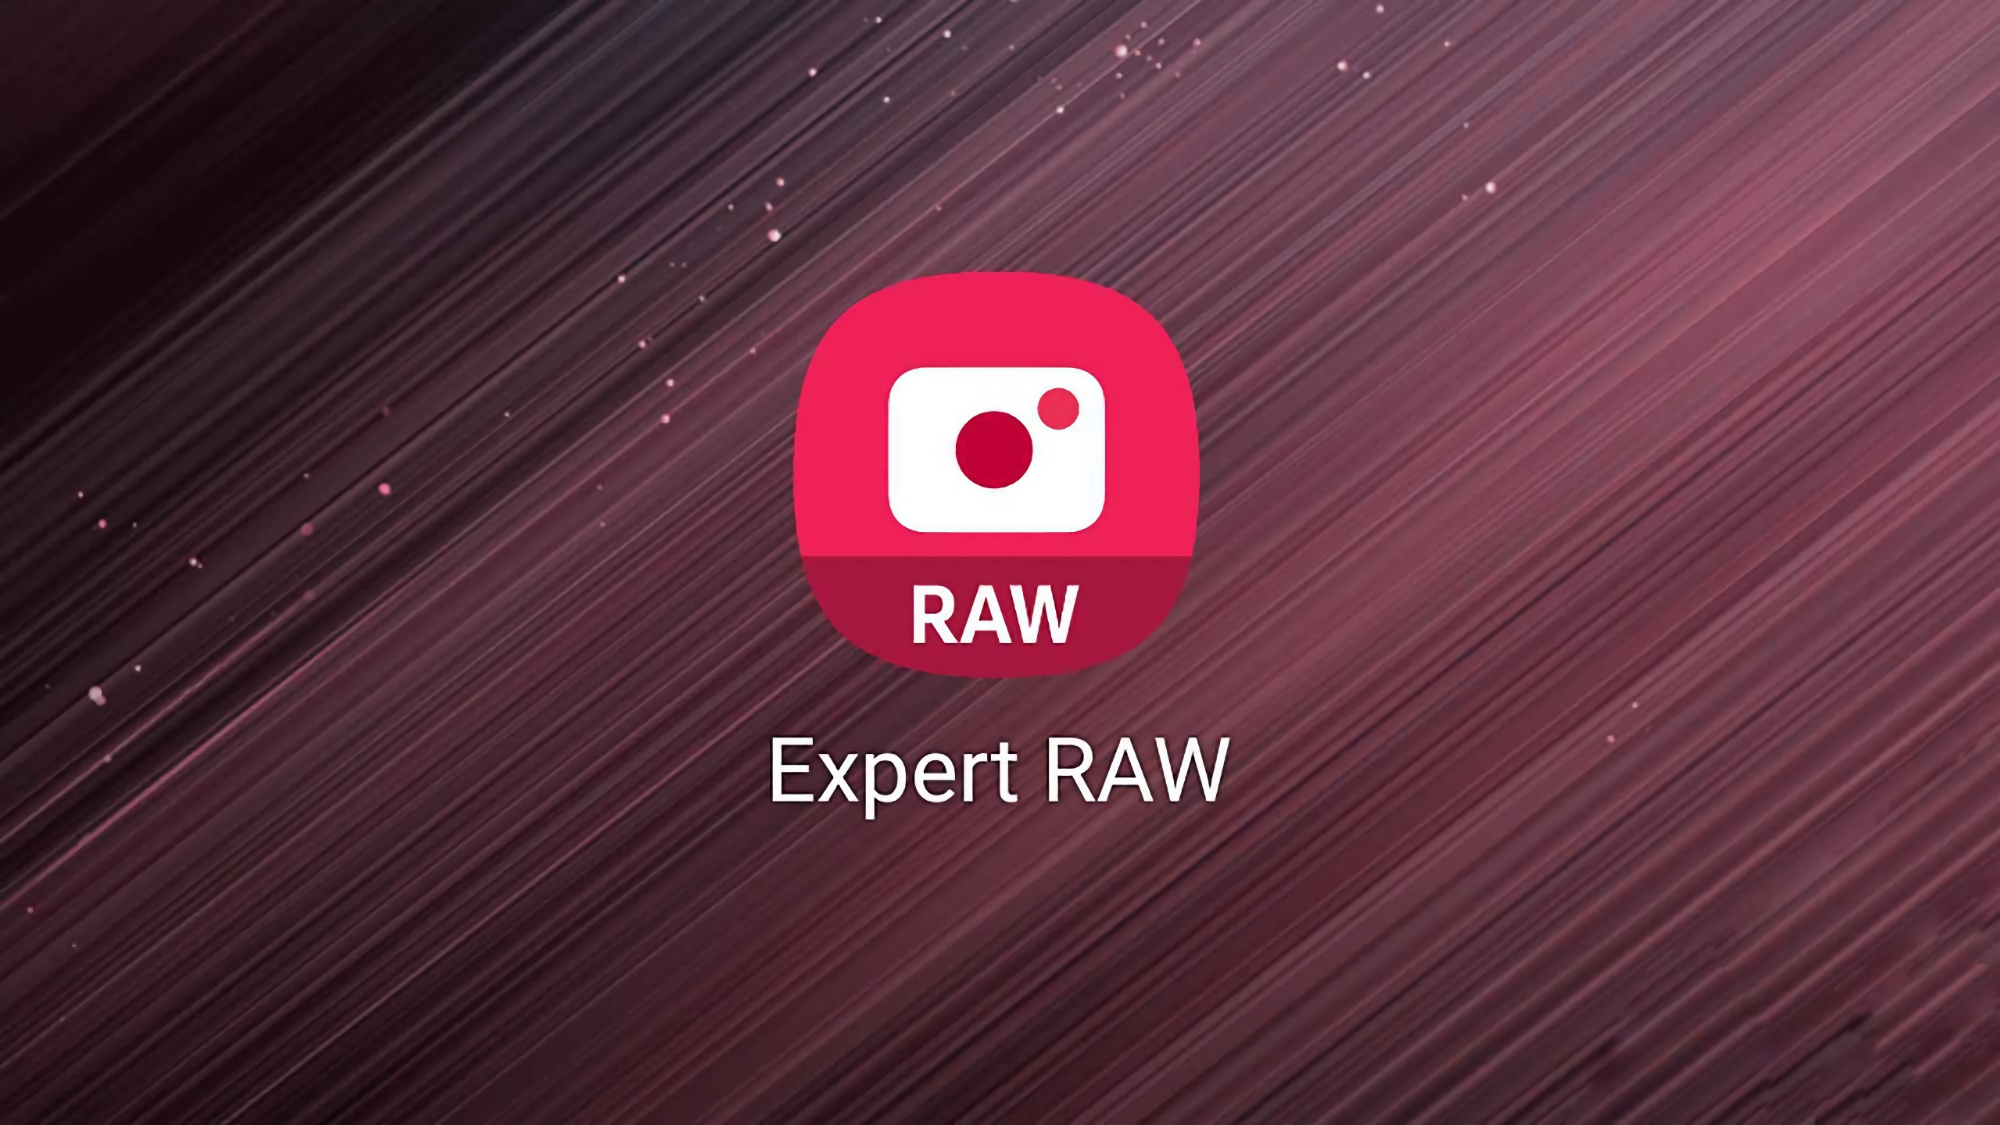 Samsung udostępnia aktualizację aplikacji aparatu Expert RAW: poprawki błędów i lepsza jakość obrazu